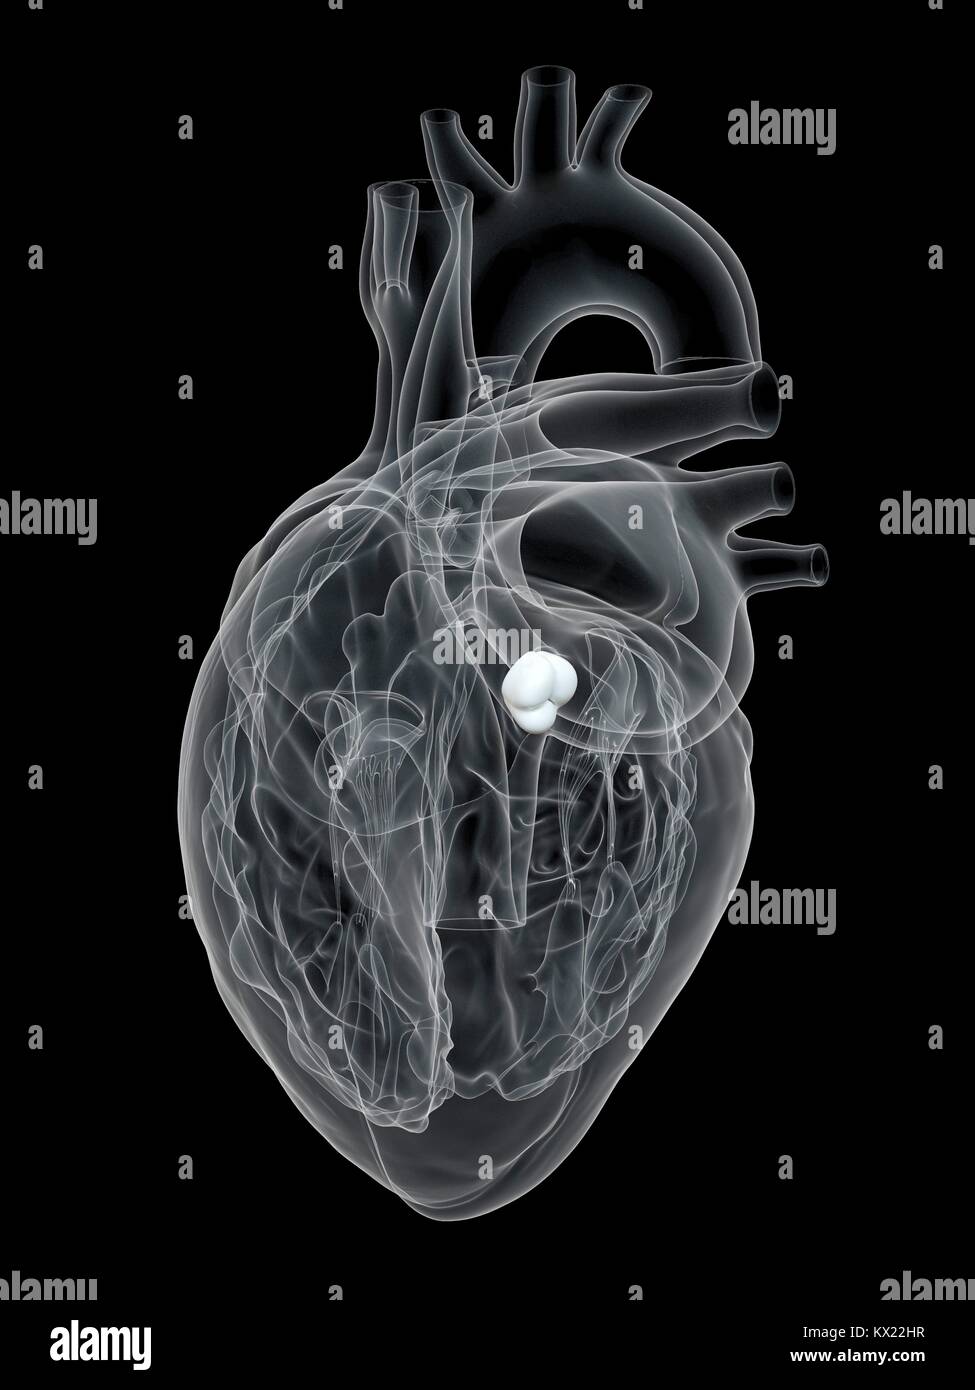 Cuore umano che mostra la valvola aortica, illustrazione. Foto Stock